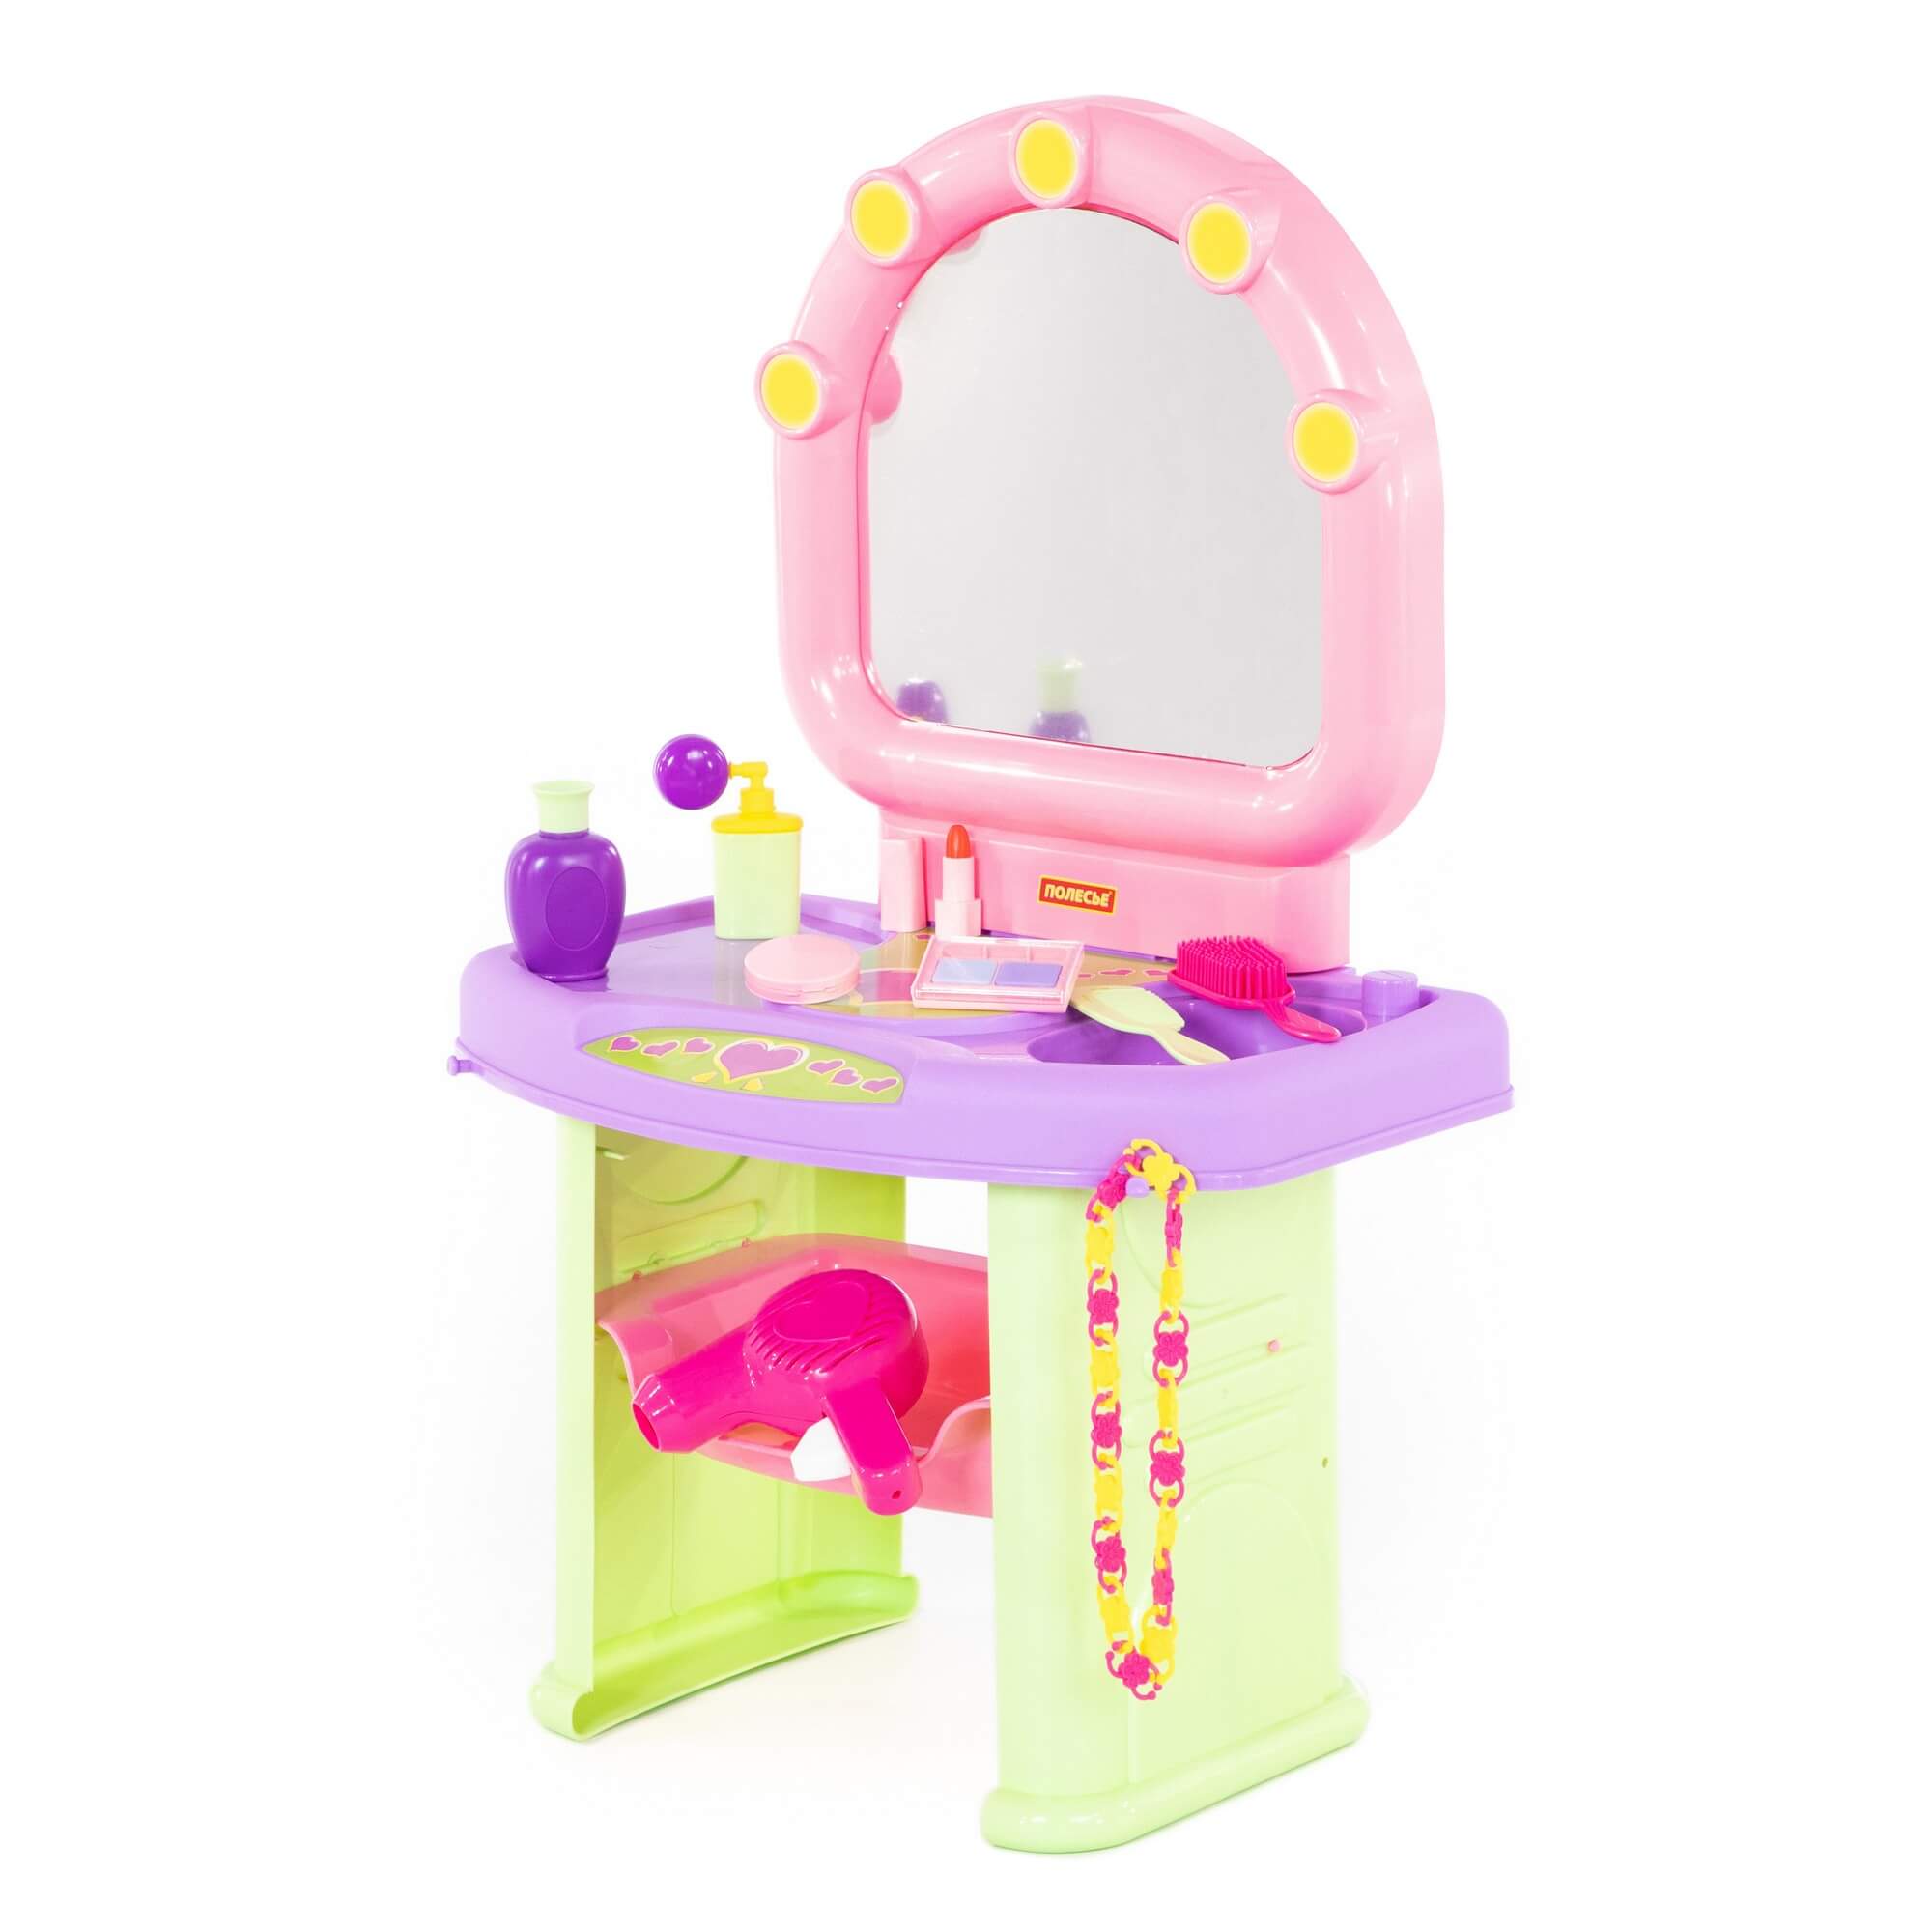 Детский набор-мини Салон красоты (в коробке). Столик с зеркалом. Арт. 58799. Полесье